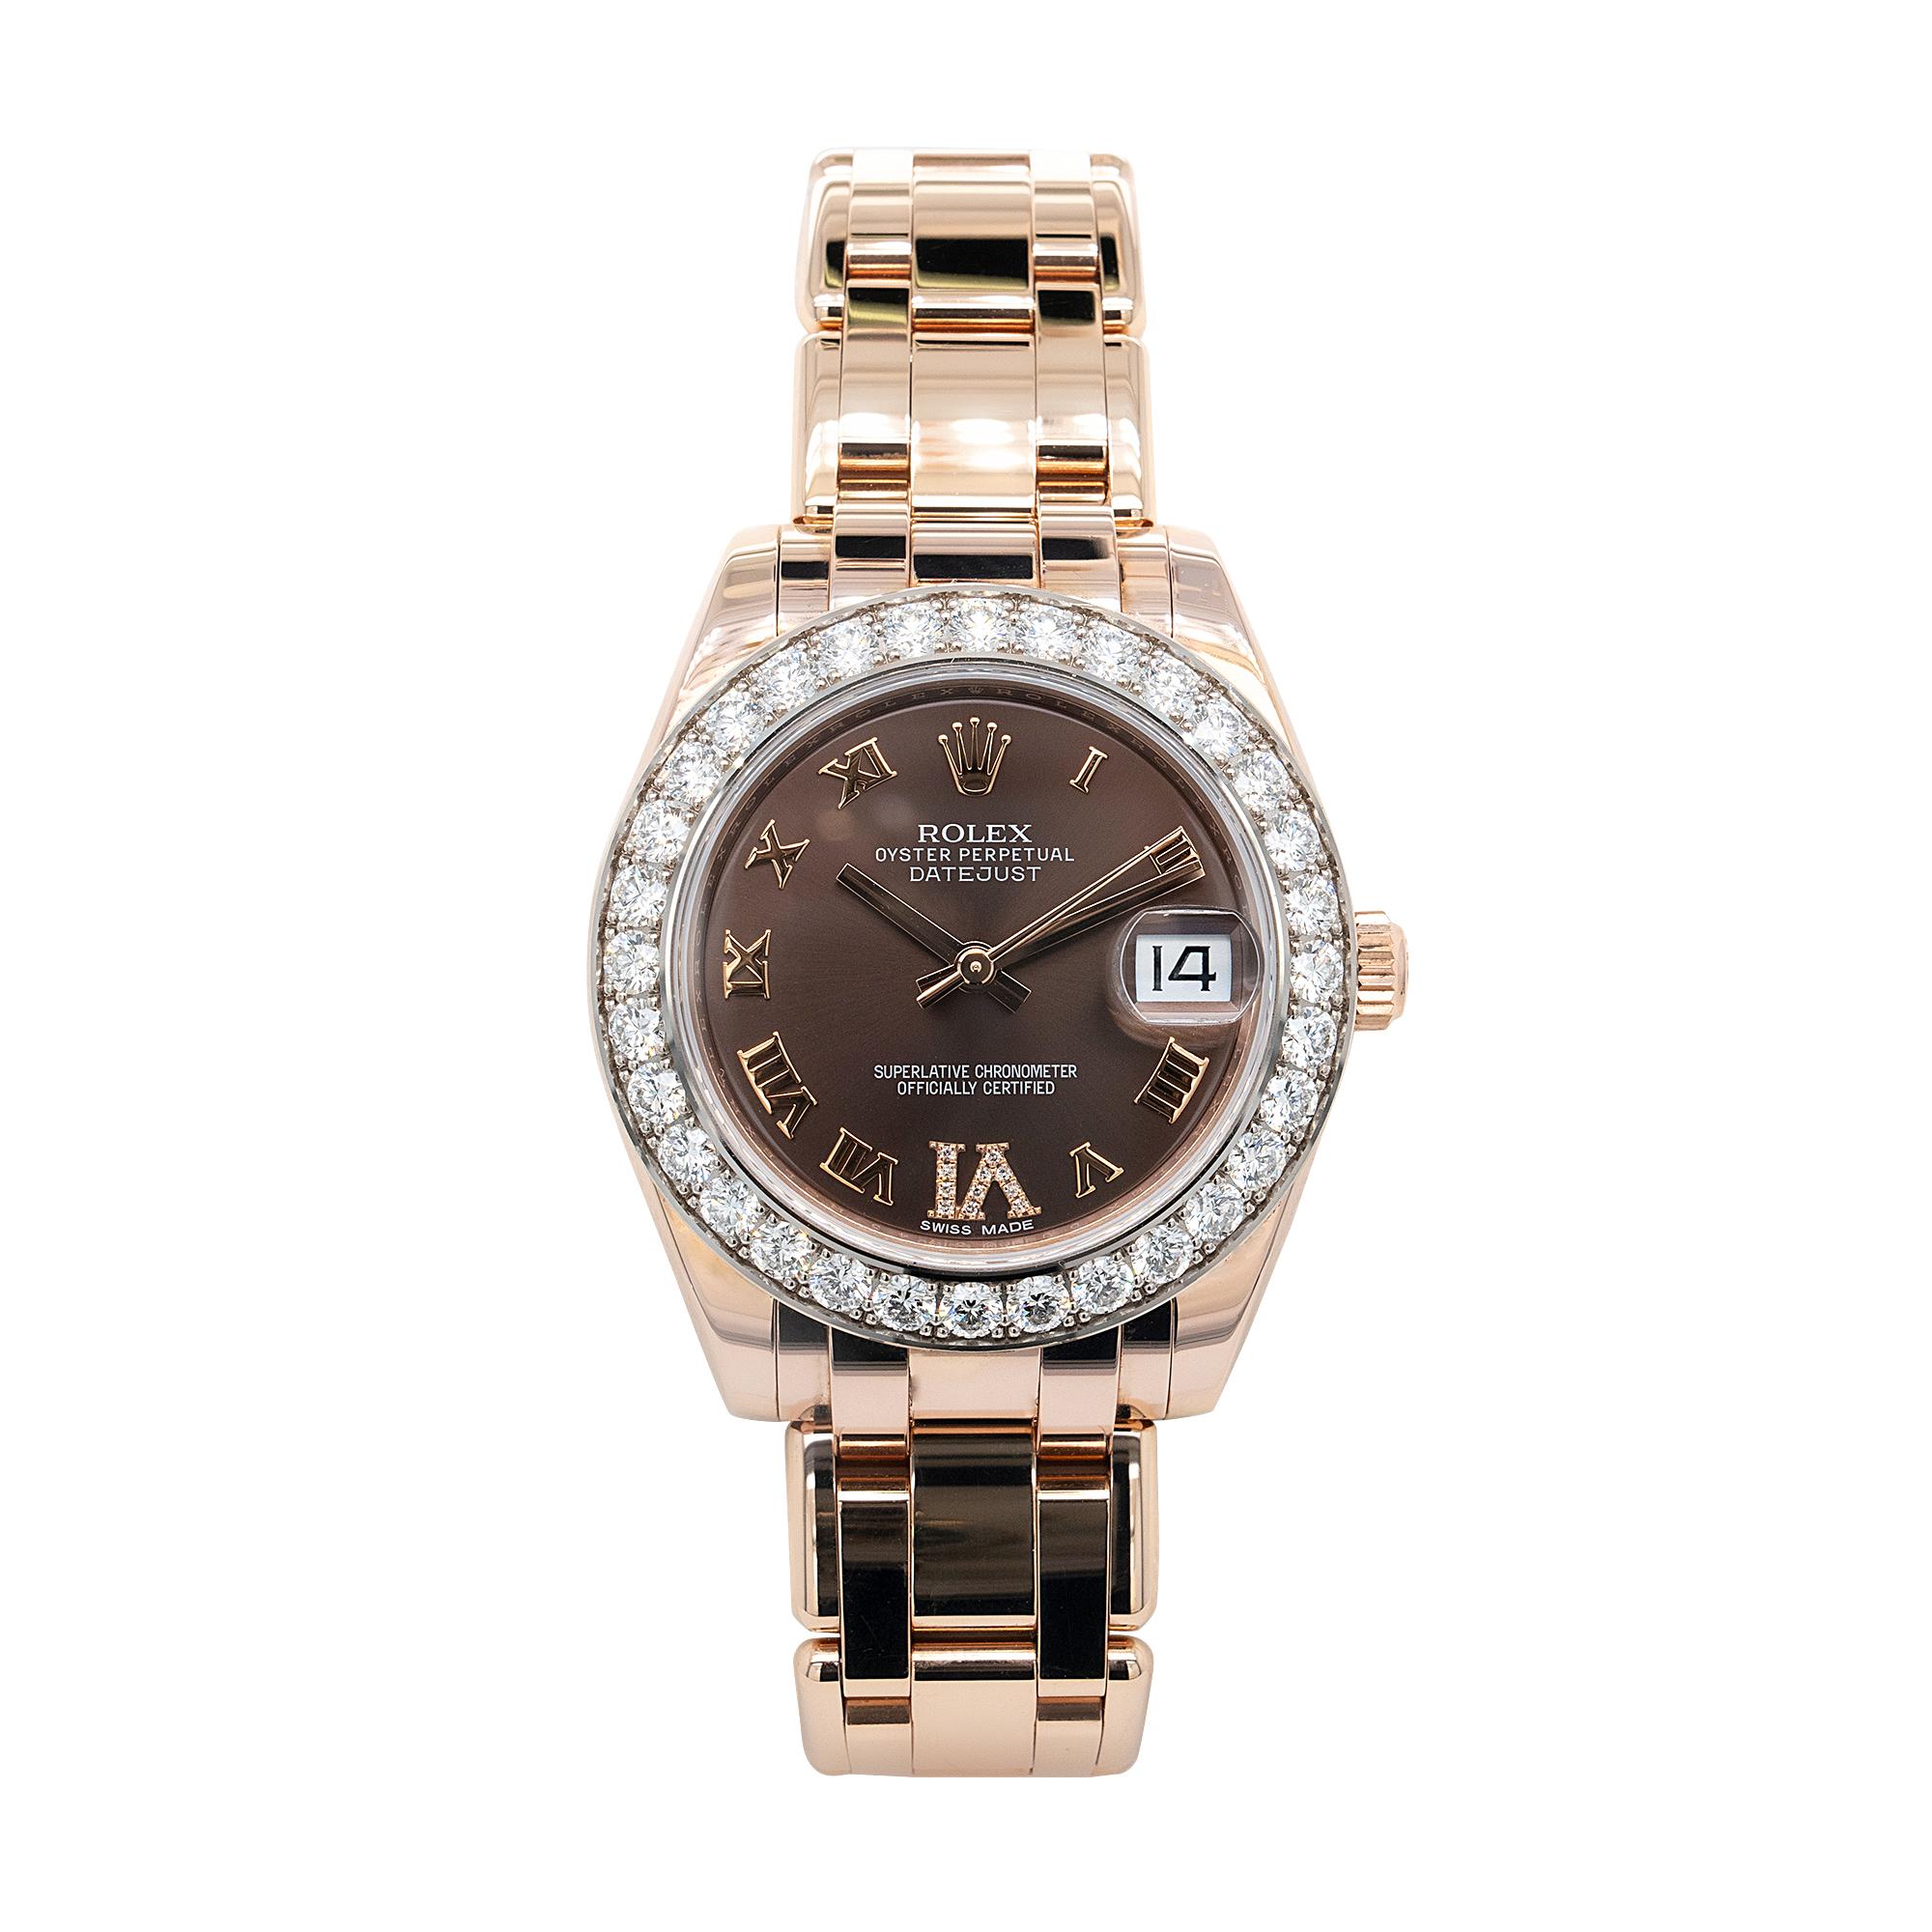 Marque : Rolex
Nom du modèle : Rolex Pearlmaster Rose Gold Diamond Ladies Watch
Numéro de modèle : 81285
Matériau du boîtier : Or rose 18k
Diamètre du boîtier : Boîtier Oyster 34.0mm
Cristal : Cristal saphir résistant aux rayures avec loupe